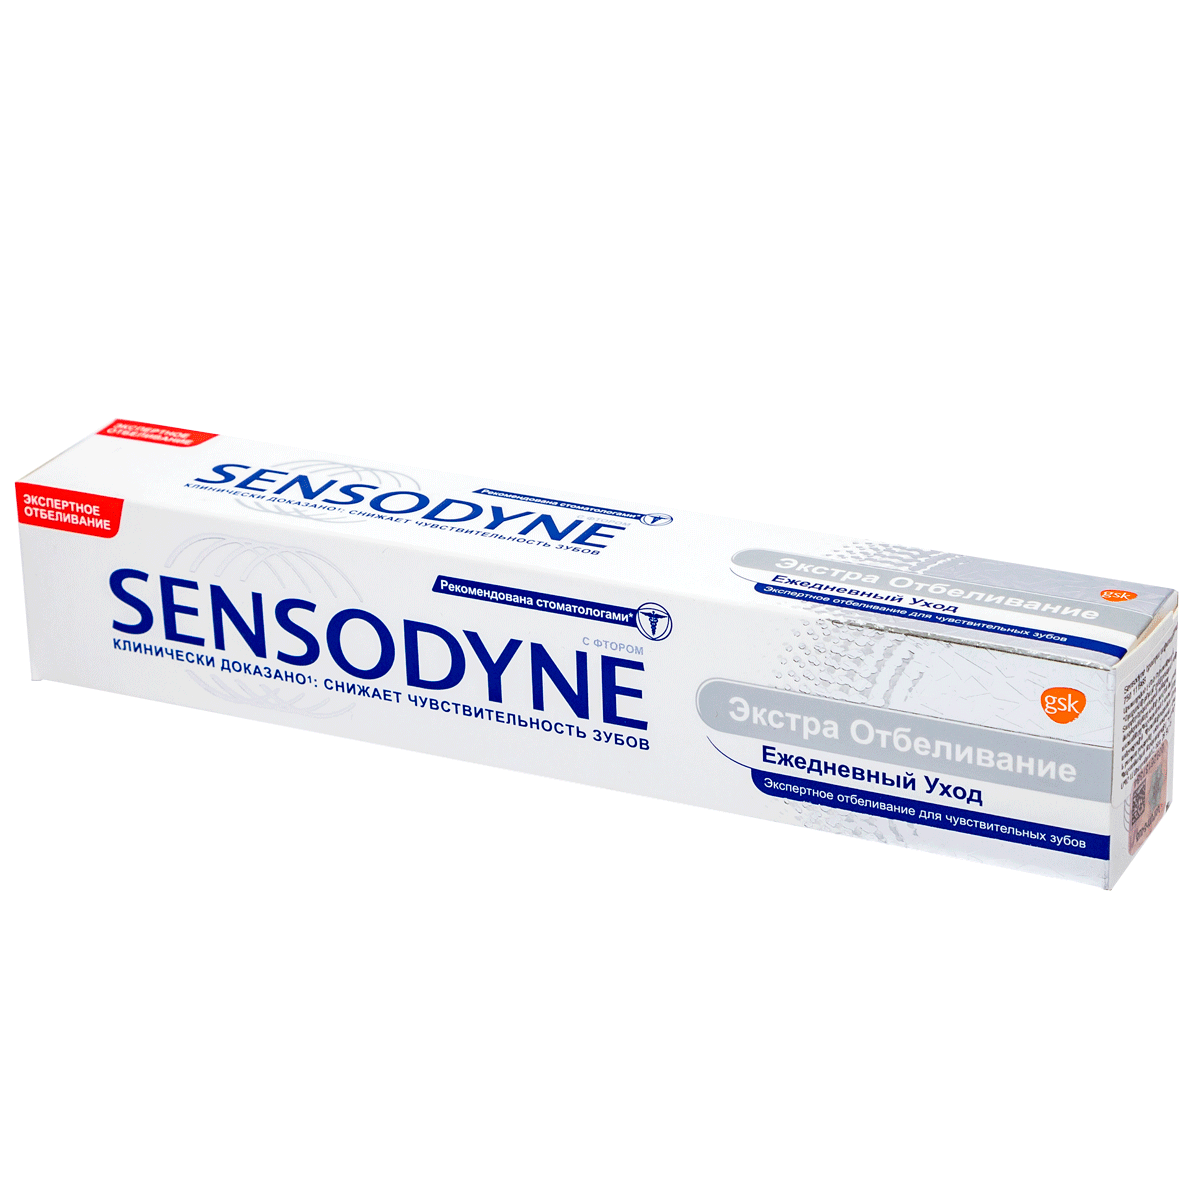 Ատամի մածուկ Sensodyne 